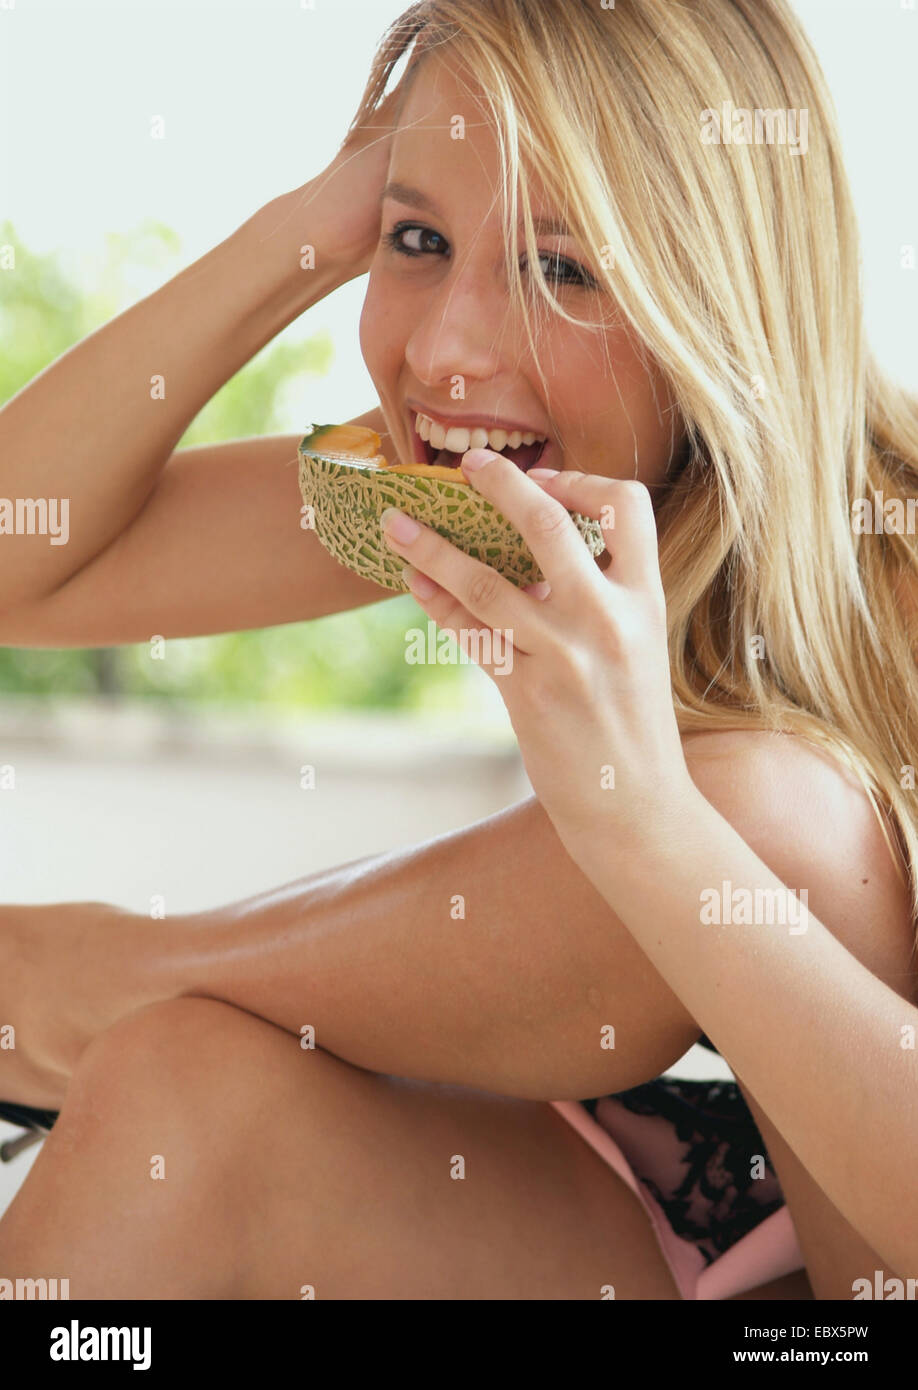 Blonde aux cheveux long jeune femme dans un tissu d'été et de hauts talons de manger un melon Galia avec un sourire Banque D'Images